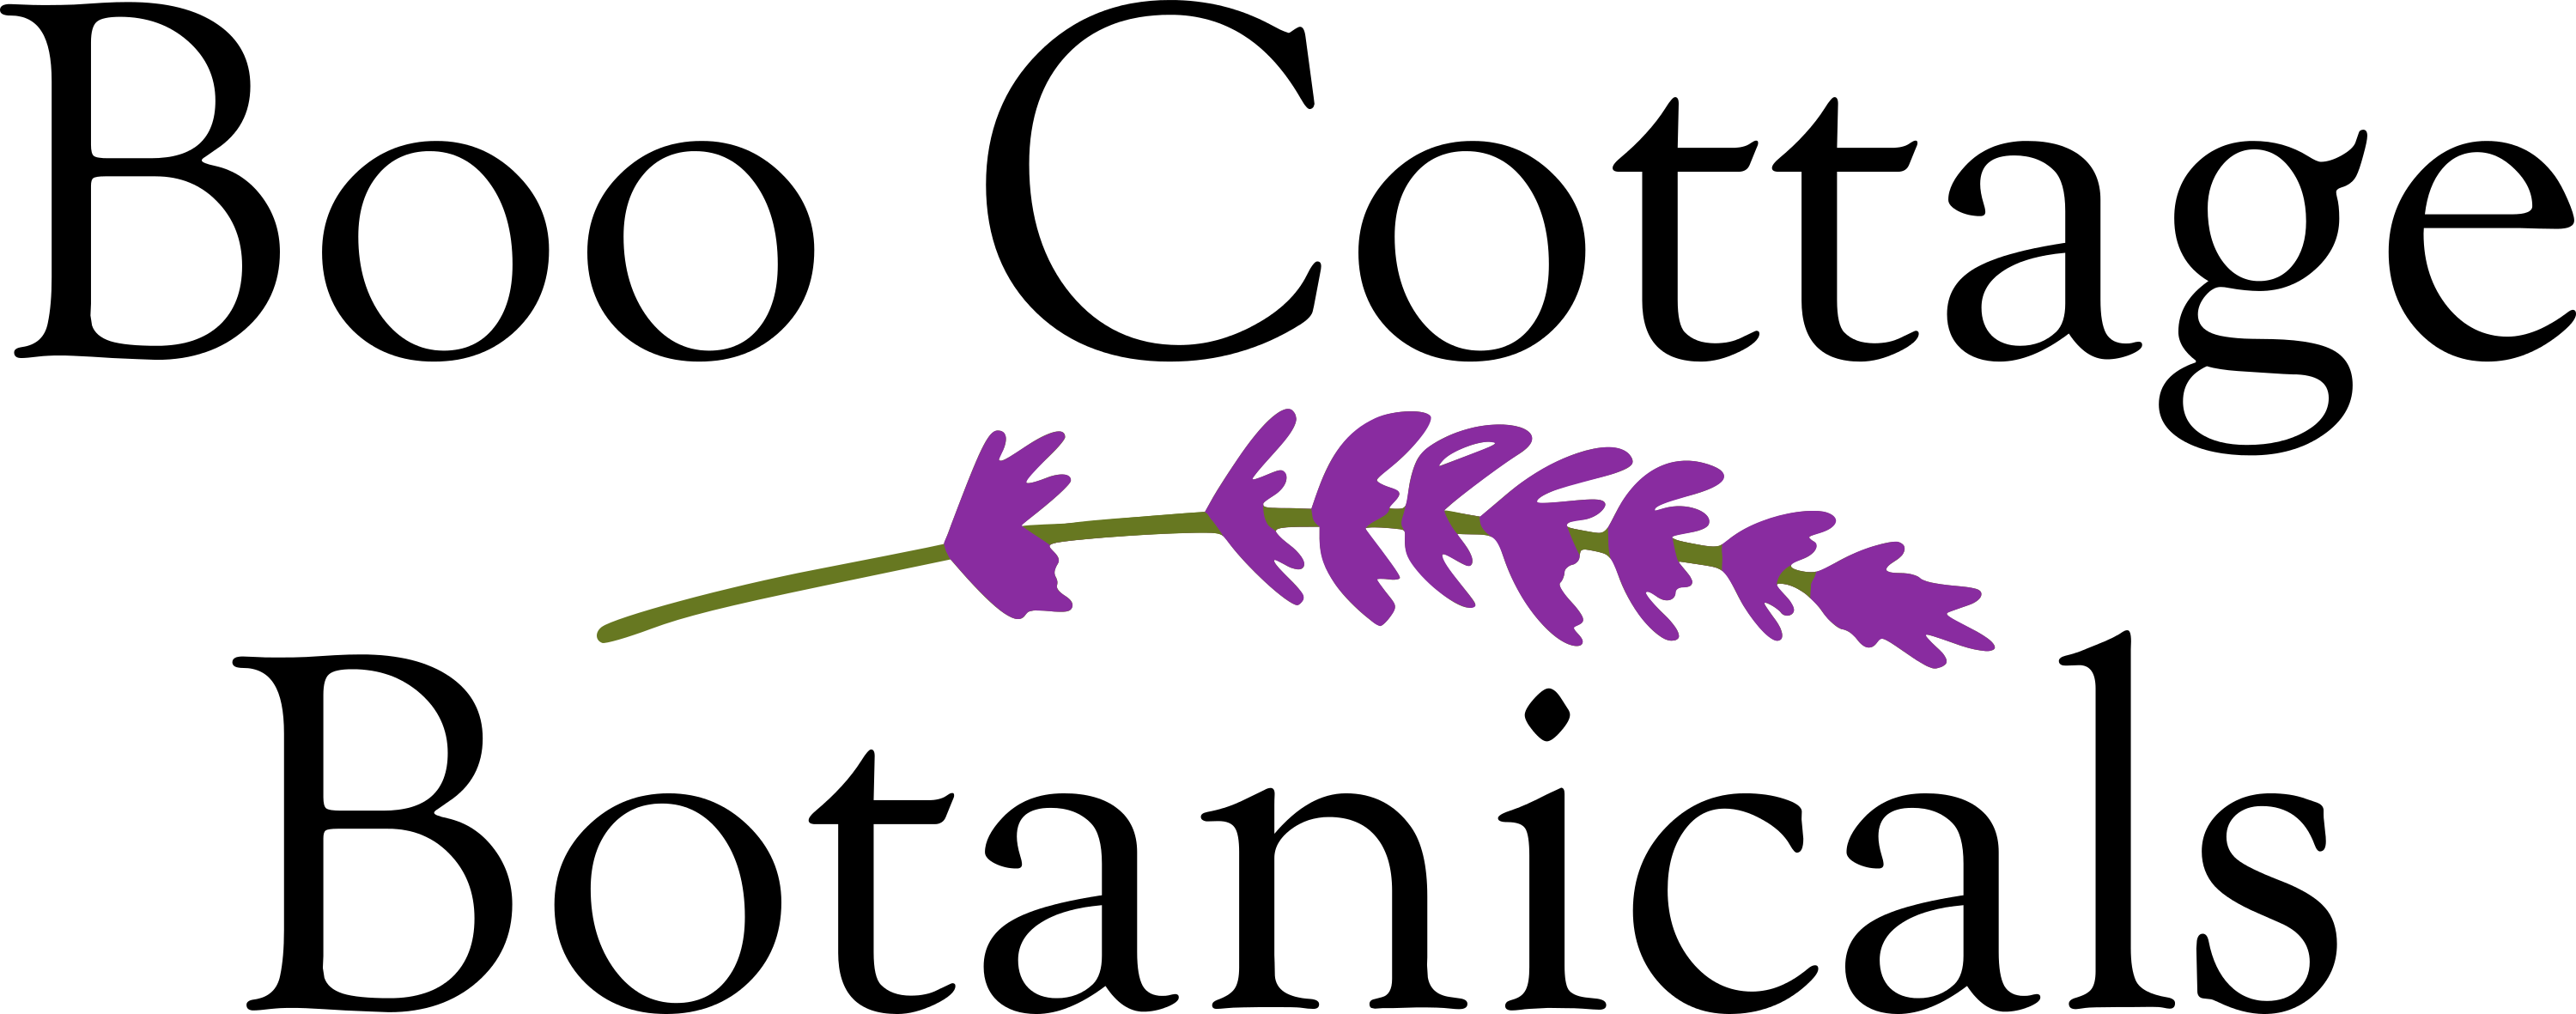 Boo Cottage Botanicals logo with lavender sprig